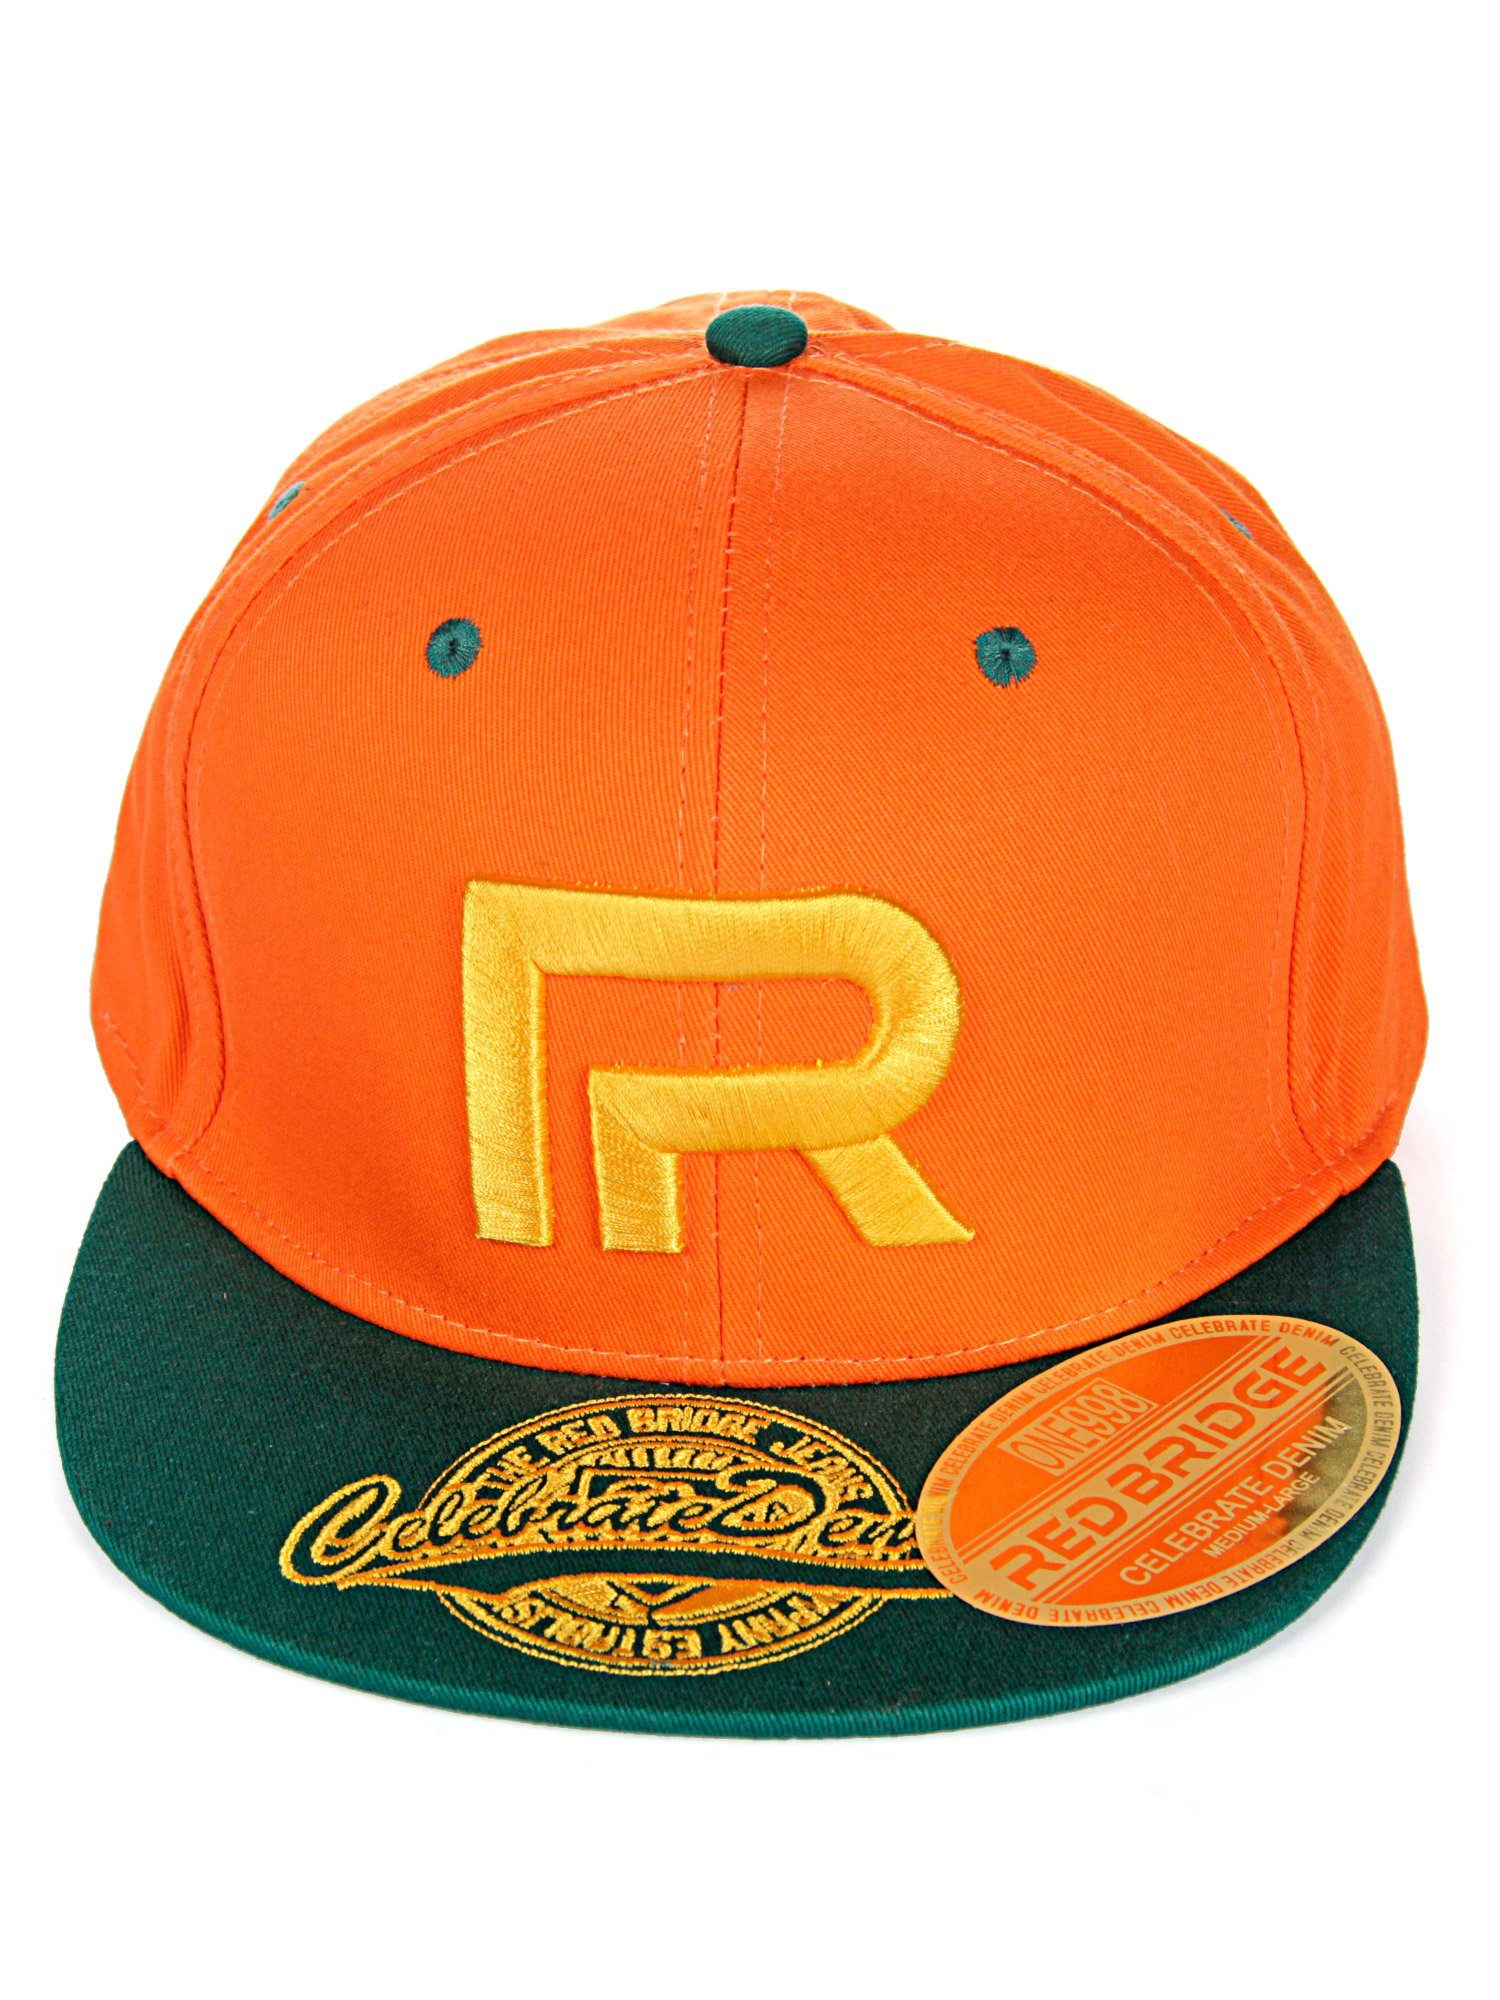 RedBridge Baseball Cap Wellingborough mit orange-grün Druckverschluss